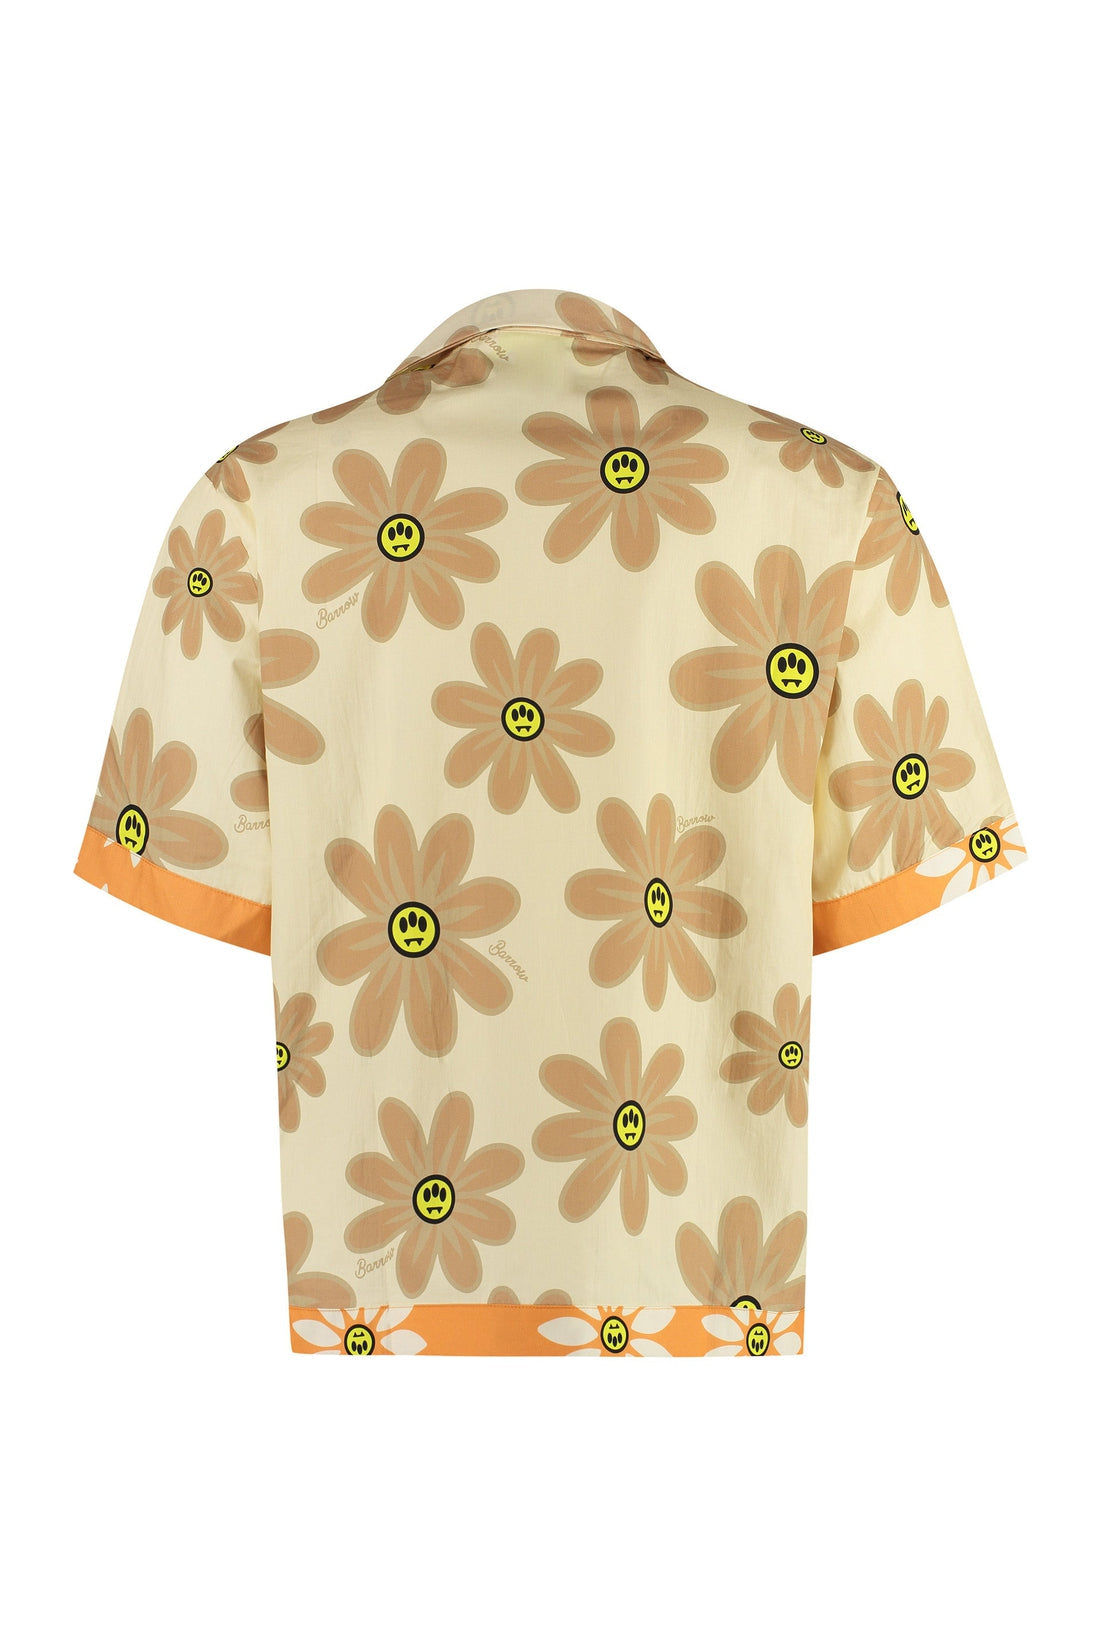 Barrow-OUTLET-SALE-Cotton poplin shirt-ARCHIVIST